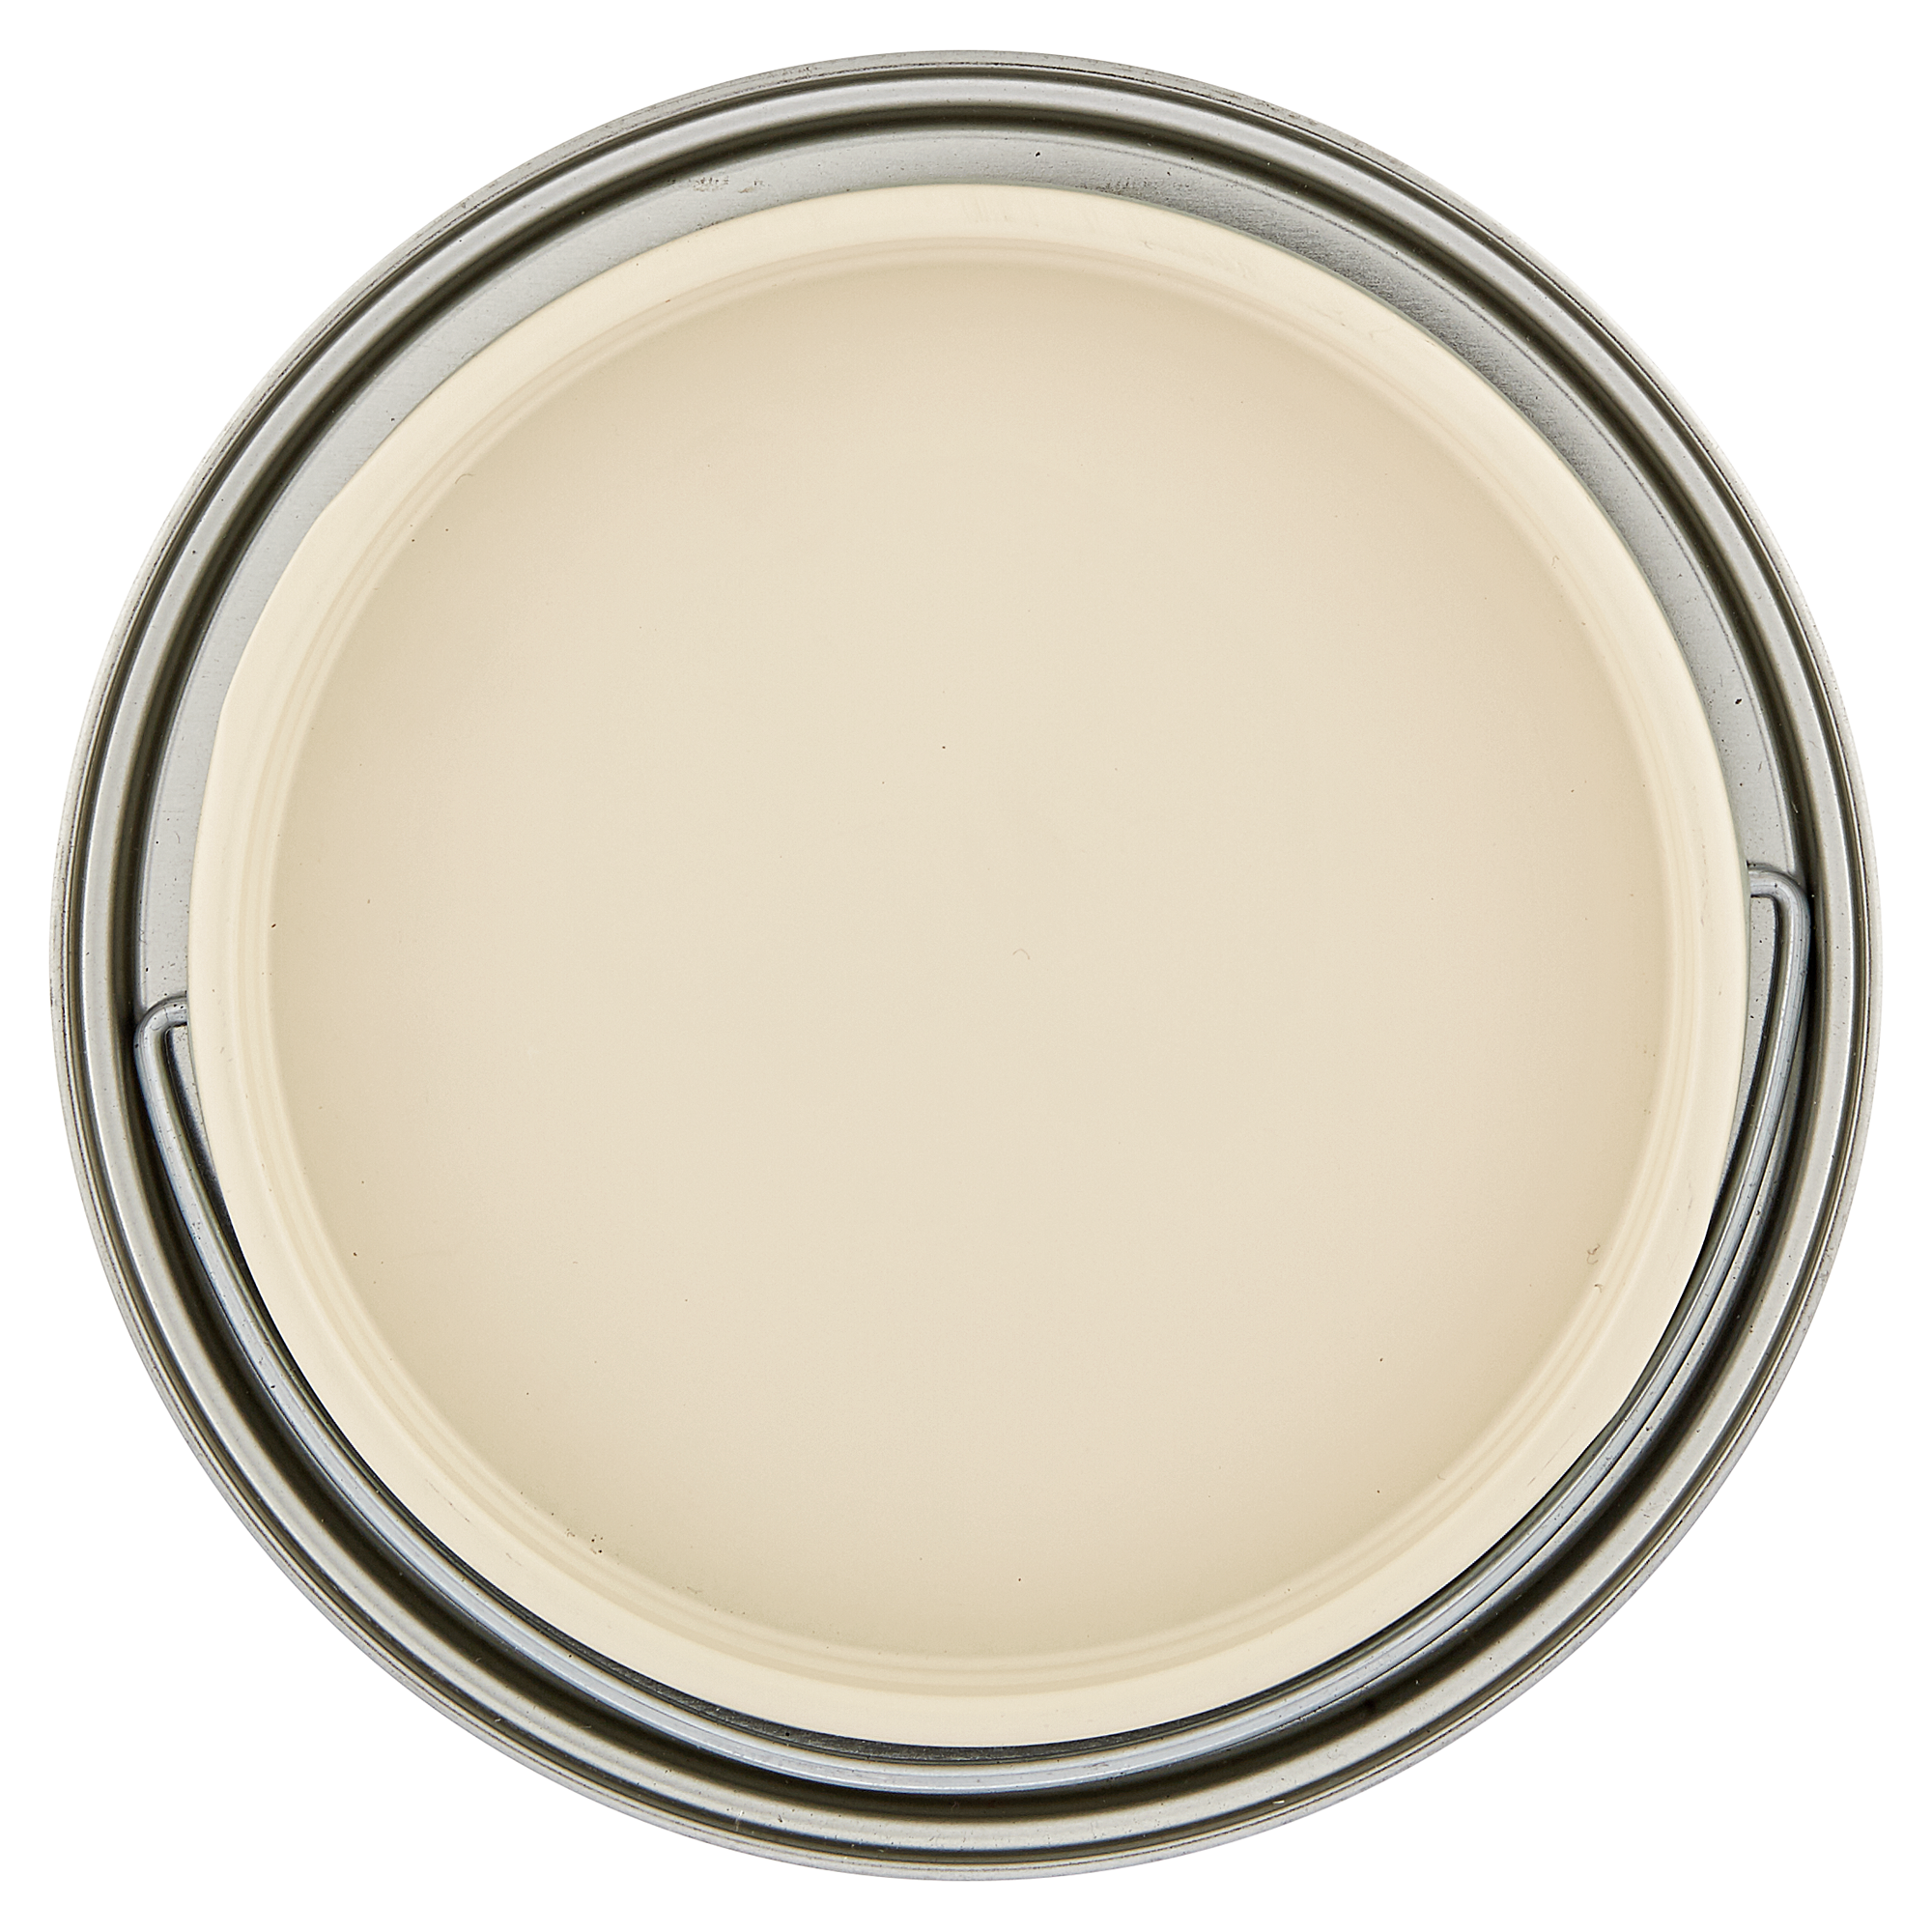 Möbel-Weißlack elfenbeinfarben seidenmatt 2 l + product picture